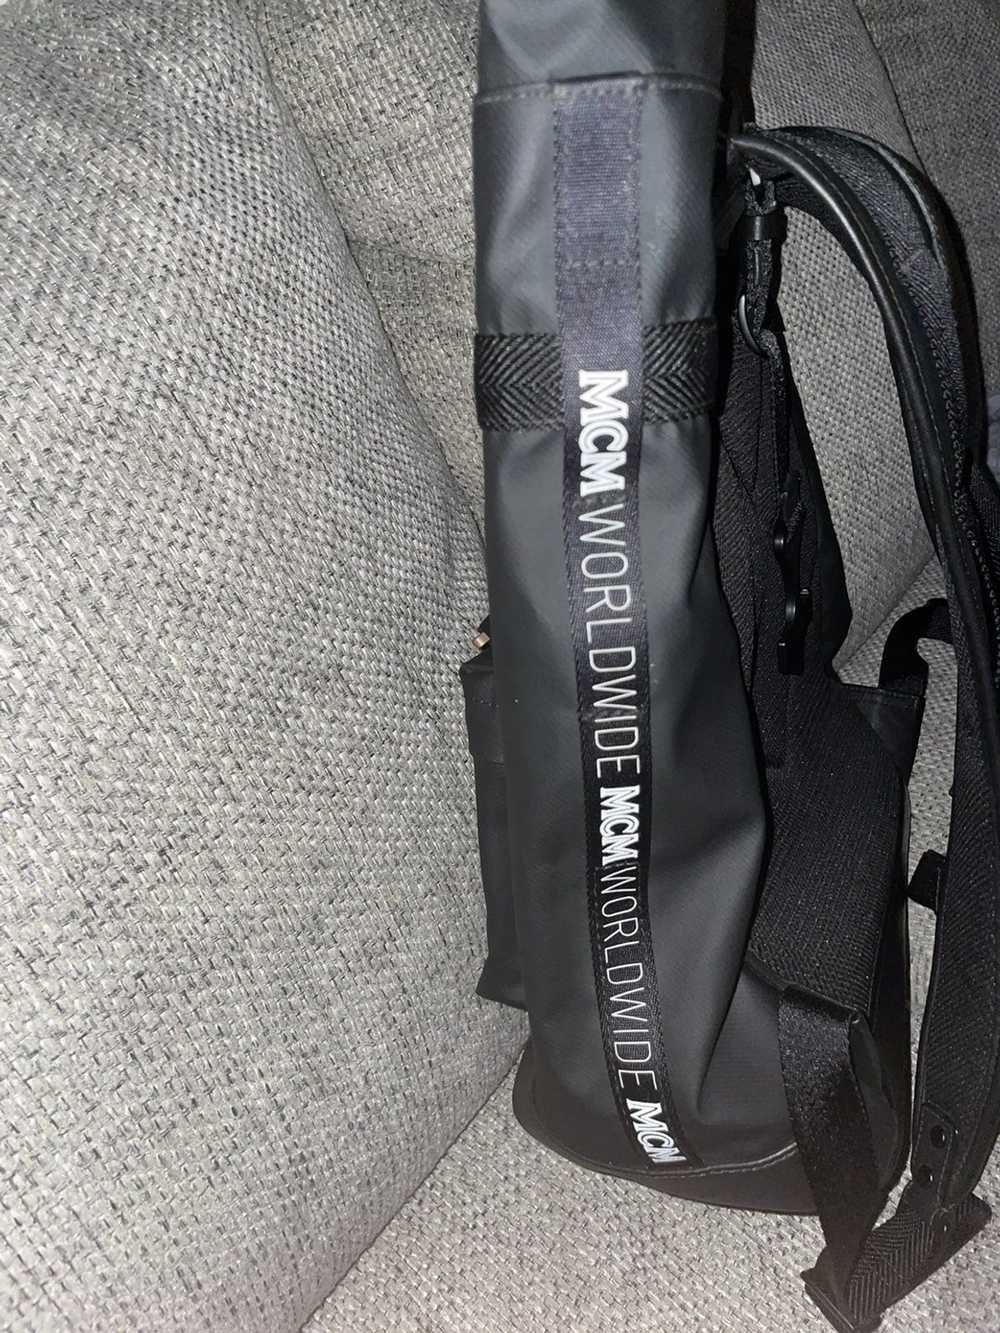 MCM Mcm backpack - image 4